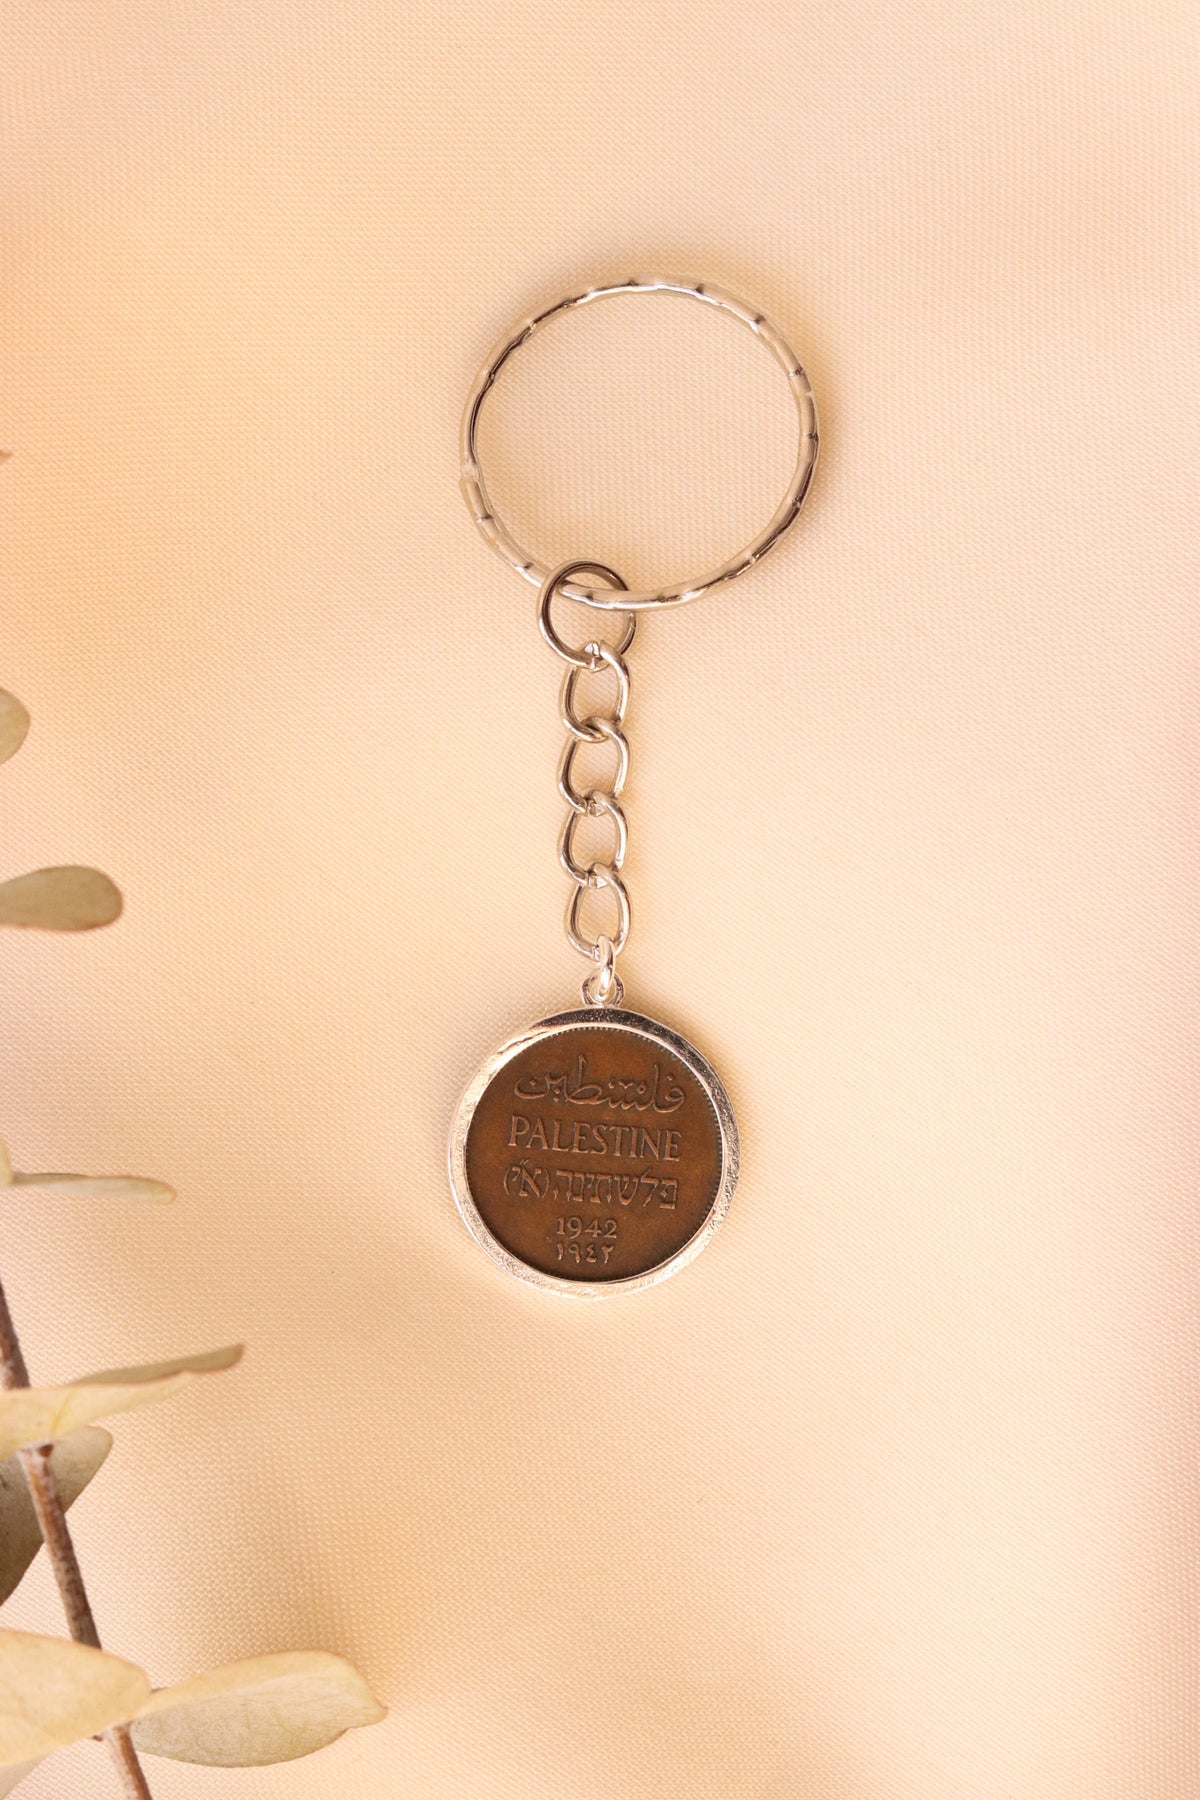 ميدالية مفاتيح العملة الفلسطينية ١مل مع ايطار بسيط